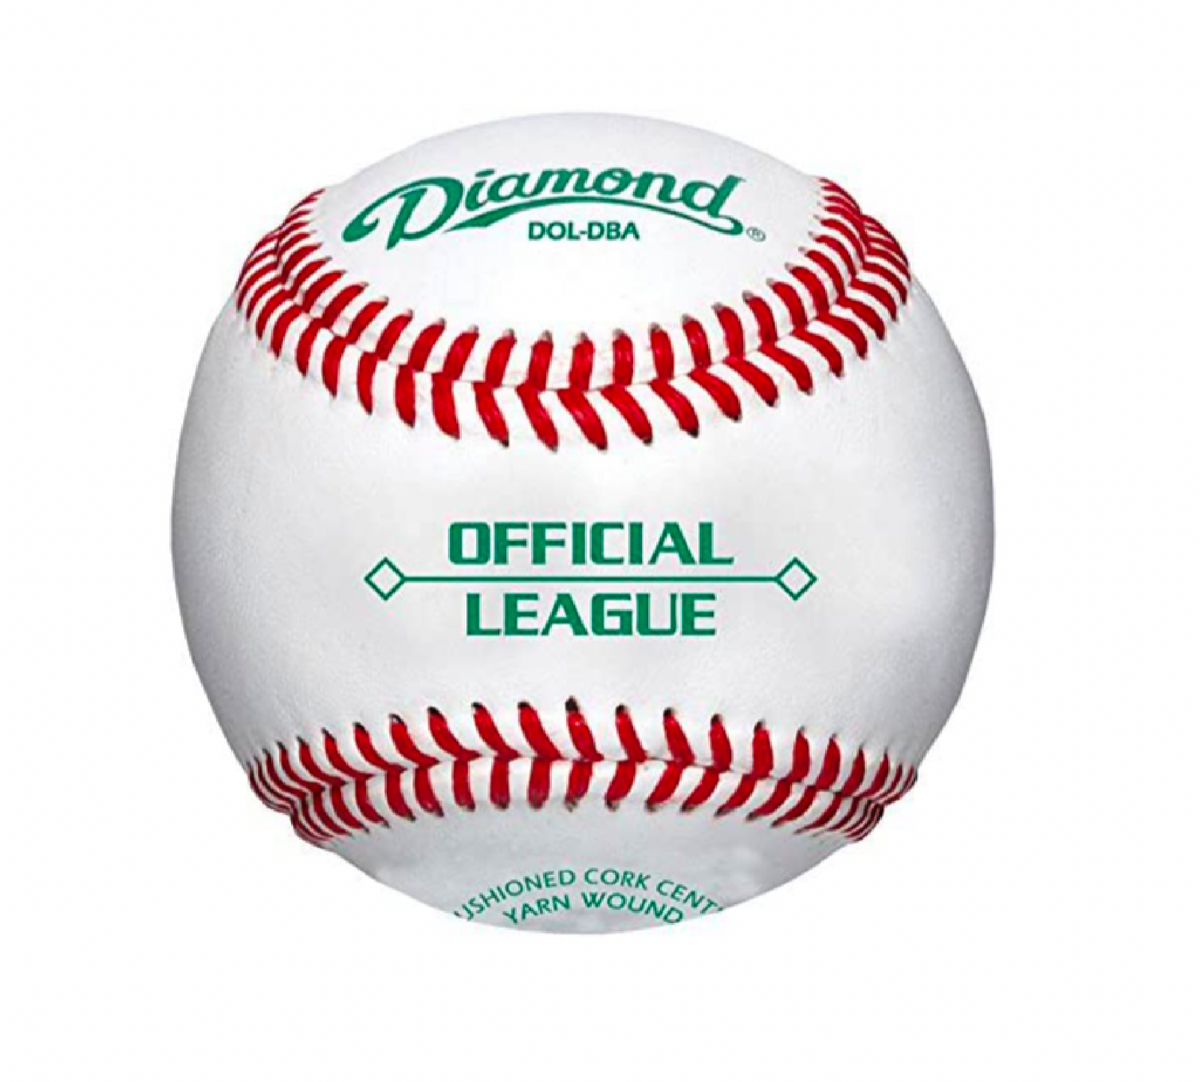 Diamond Sports | DOL-DBA | Official League Duracover Baseballs | 1 Dozen Balls